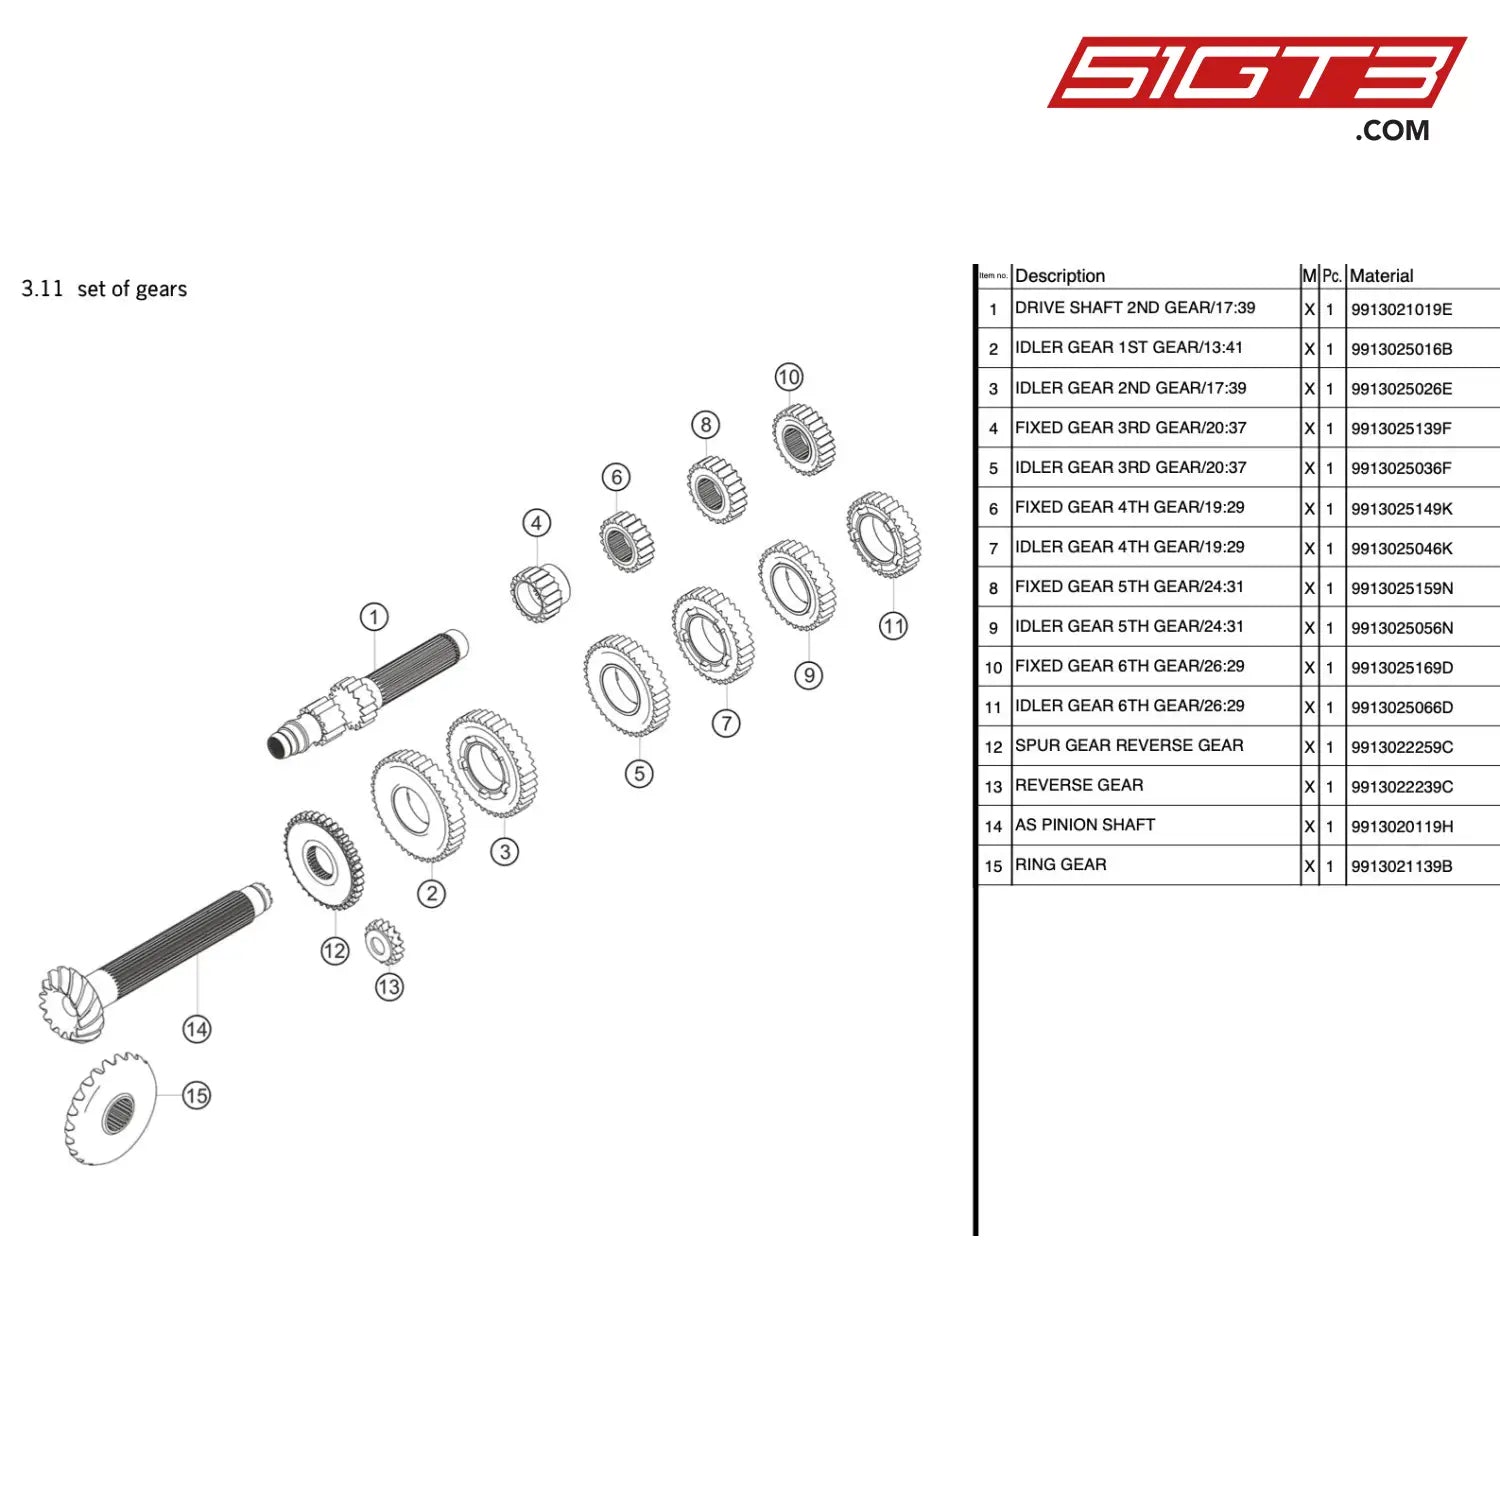 Reverse Gear - 9913022239C [Porsche 911 Gt3 R Type 991 (Gen 1)] Set Of Gears